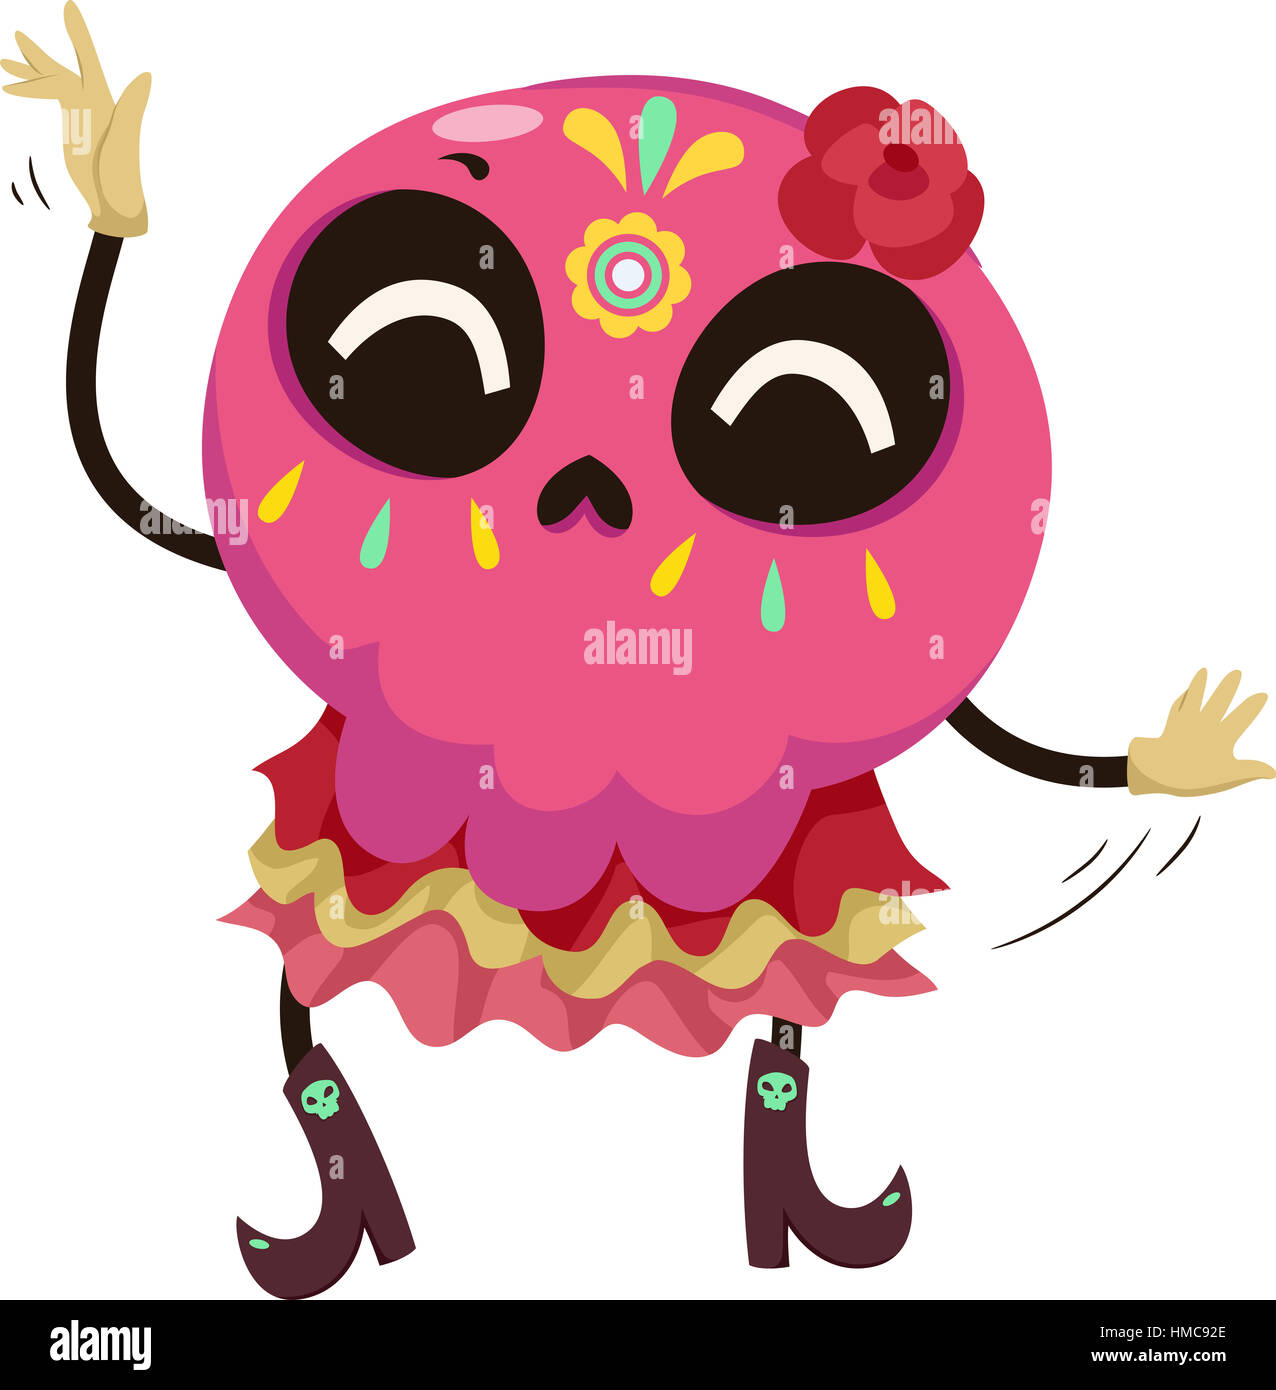 Mascot Illustration d'un crâne en sucre coloré vêtu d'un costume traditionnel mexicain effectuant une danse Banque D'Images